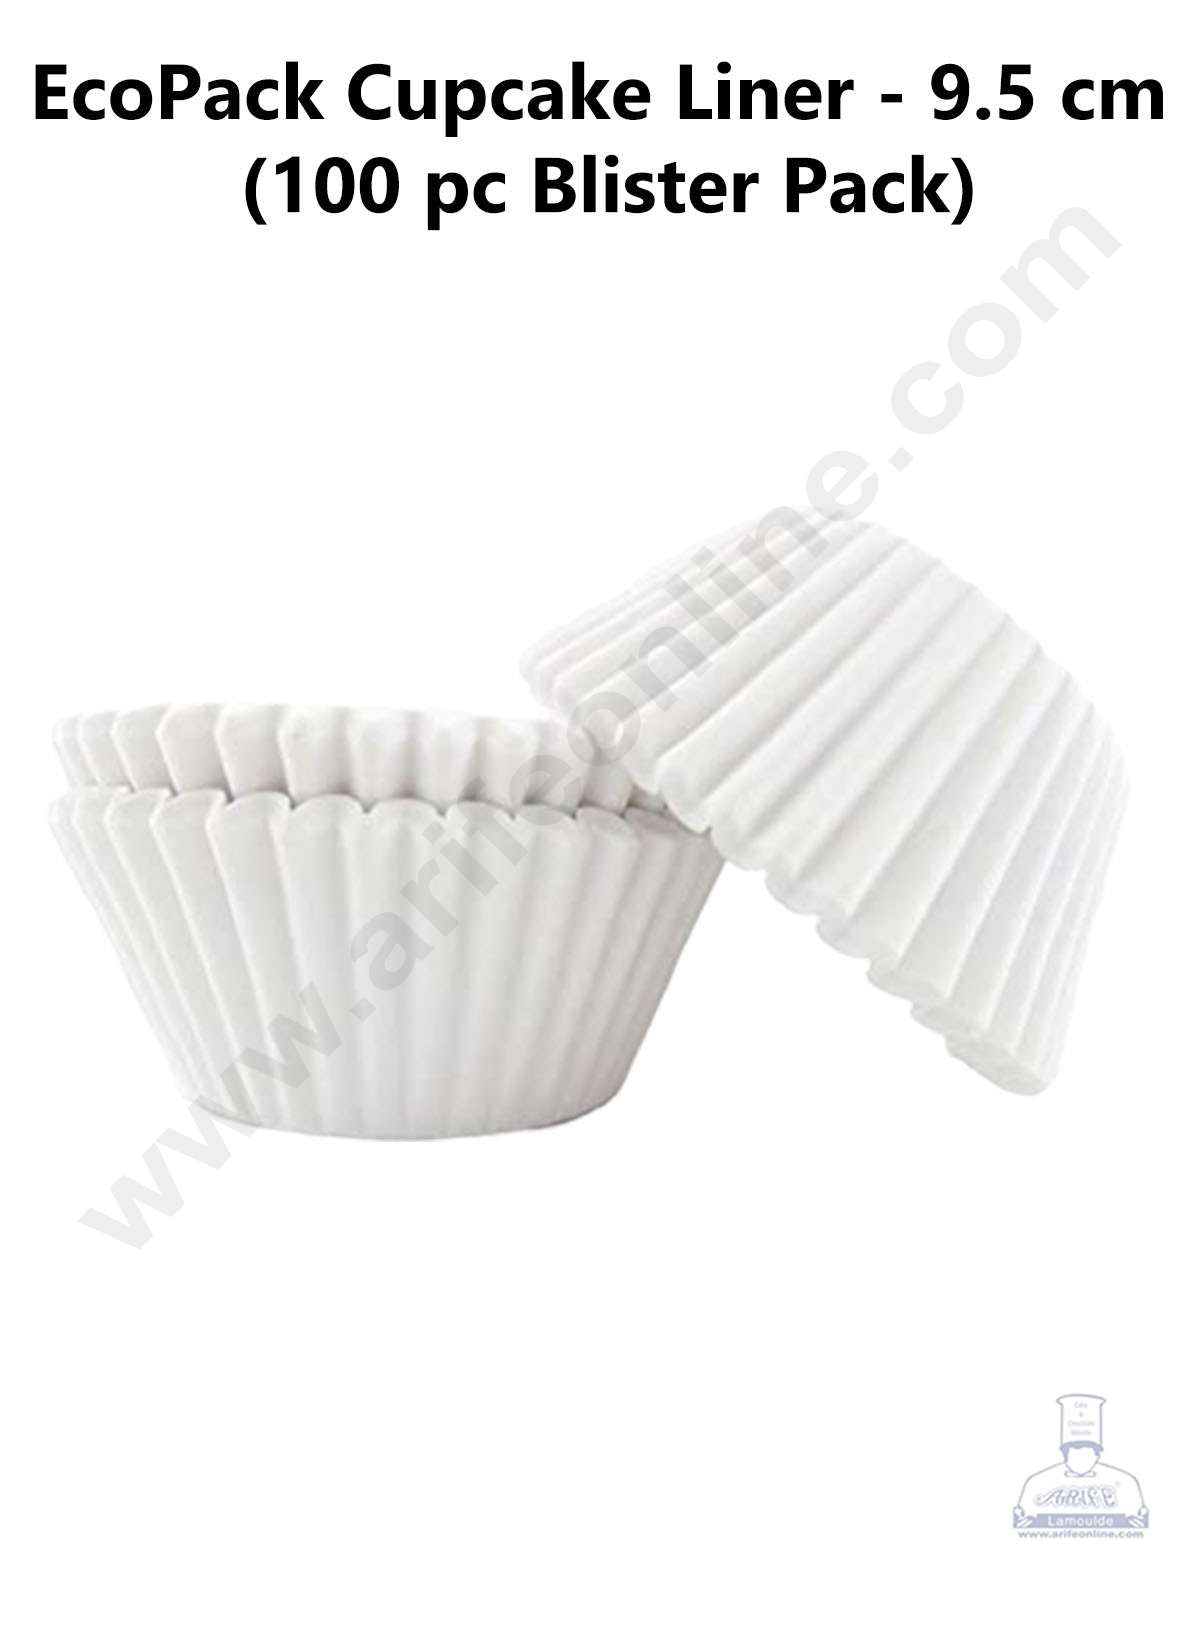 http://arifeonline.com/cdn/shop/products/Cake-Decor_E2_84_A2-EcoPack-White-Paper-Cupcake-Liner-Blister-Pack-9.5cm-100-Pcs-Blister-Pack.jpg?v=1678615017